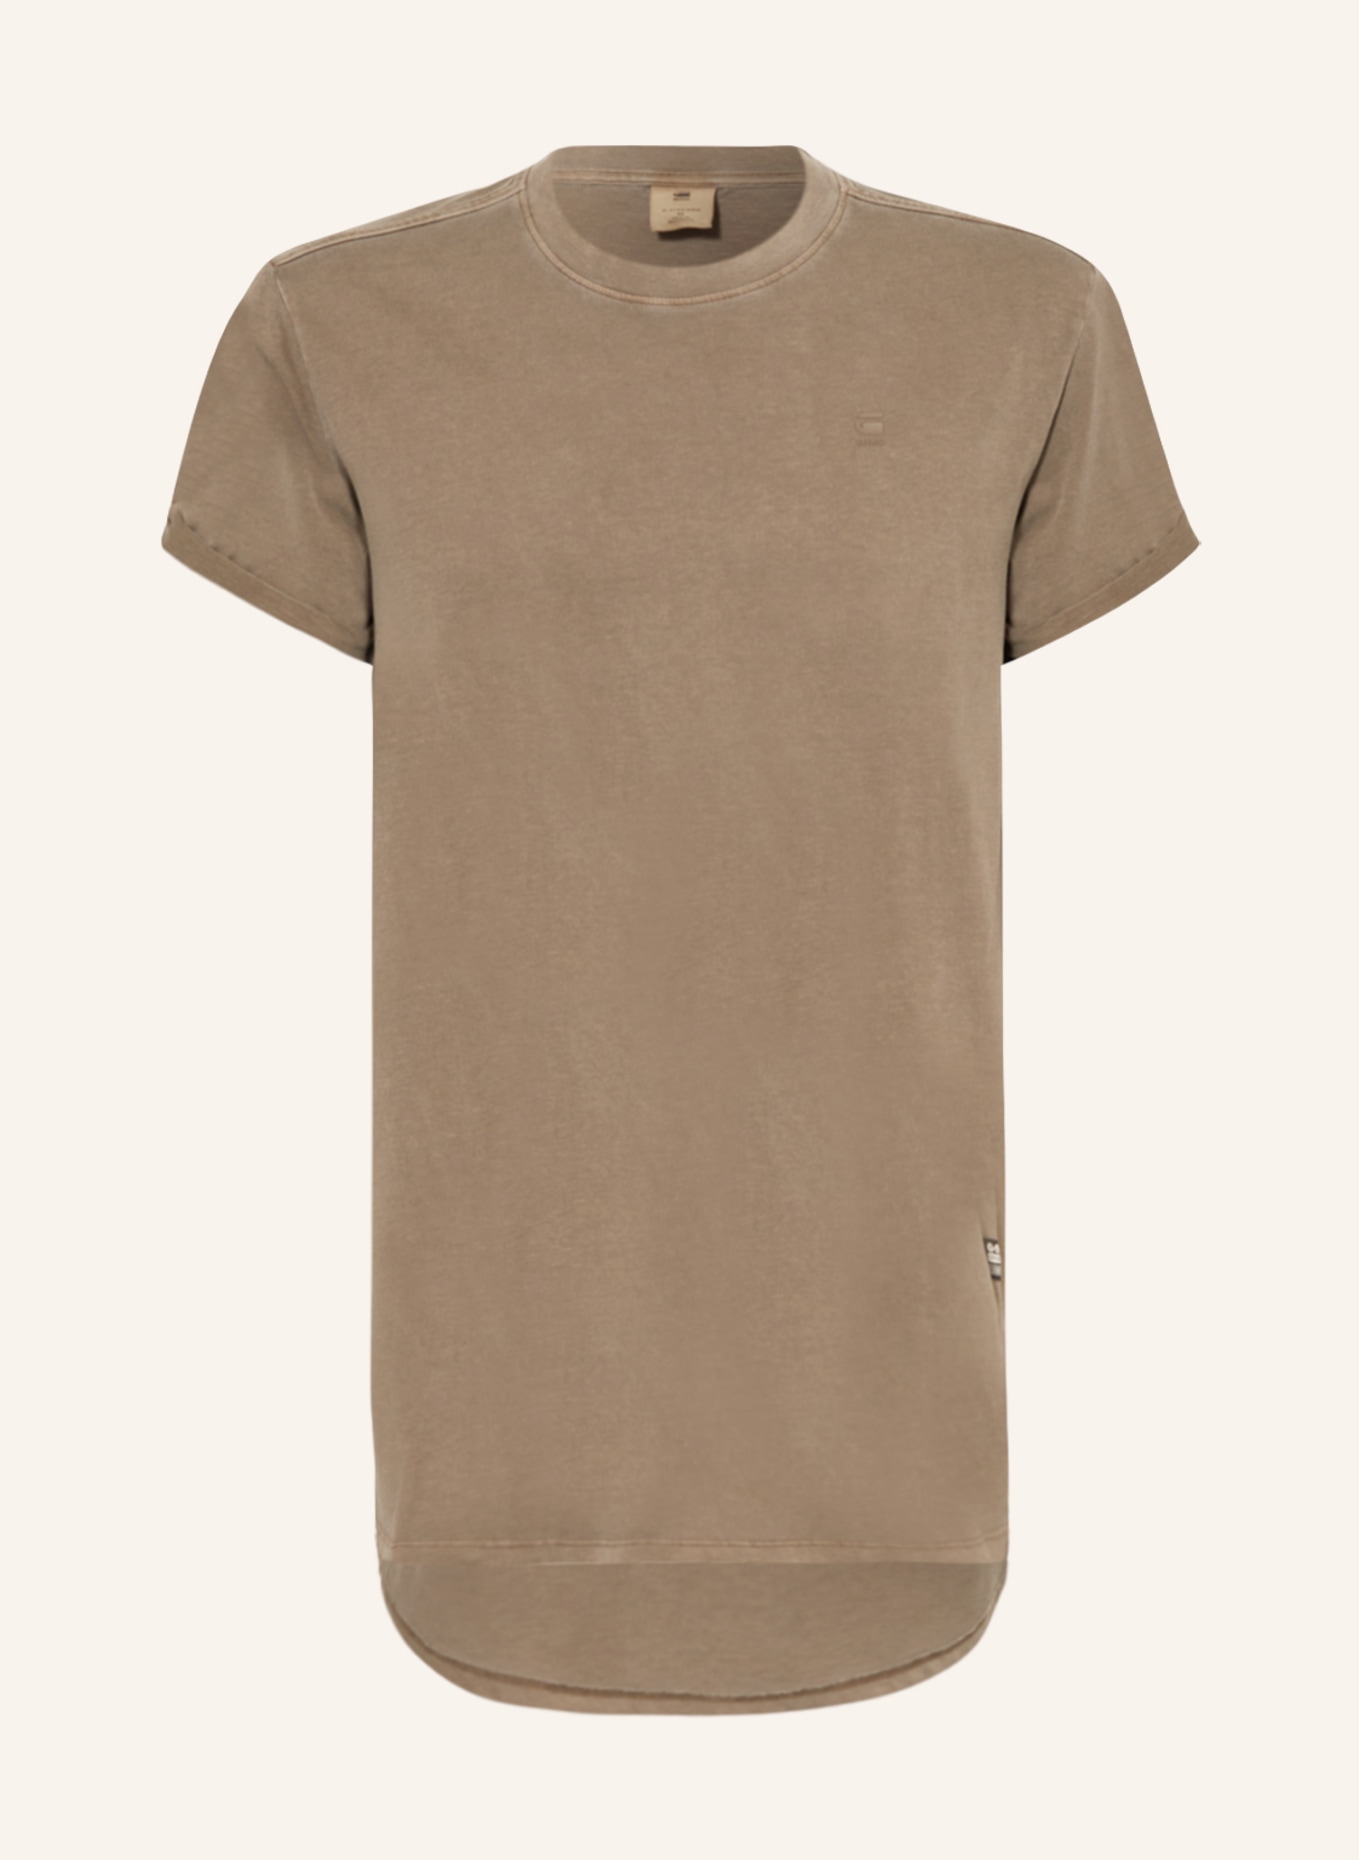 G-Star RAW T-Shirt LASH, Farbe: B754 deep walnut gd (Bild 1)